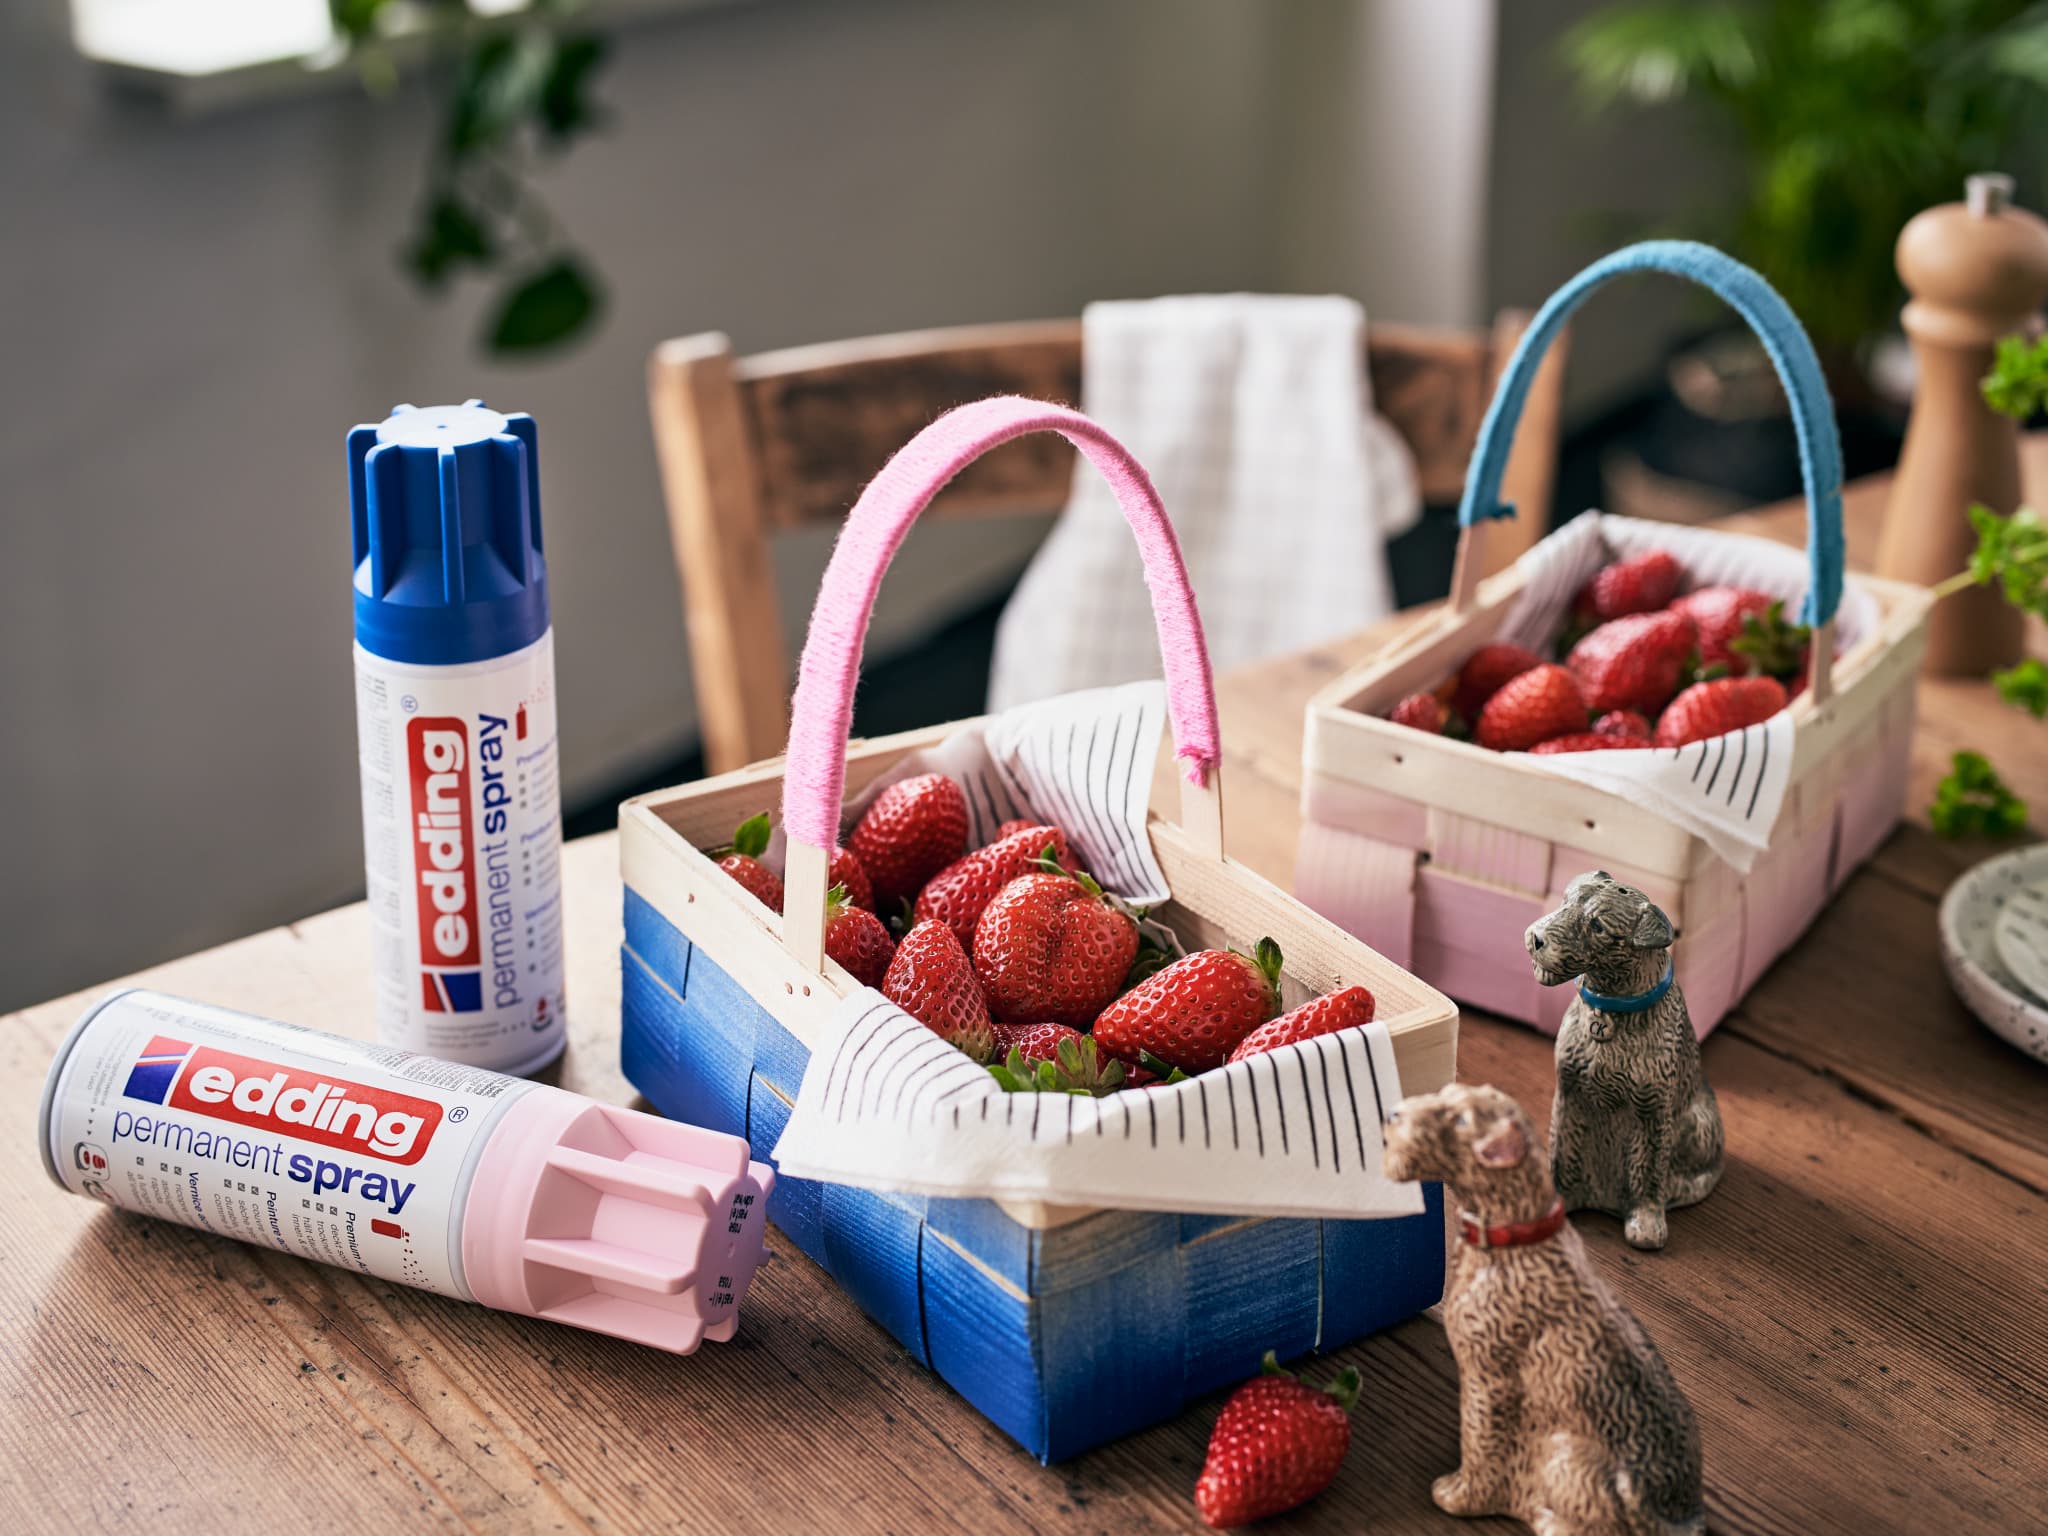 Frische Erdbeeren in Holzkörben auf einem Tisch mit Dosen edding 5200 Permanentspray Acryllack Pastell & sanfte Farben und kleinen dekorativen Katzenfiguren in der Nähe.